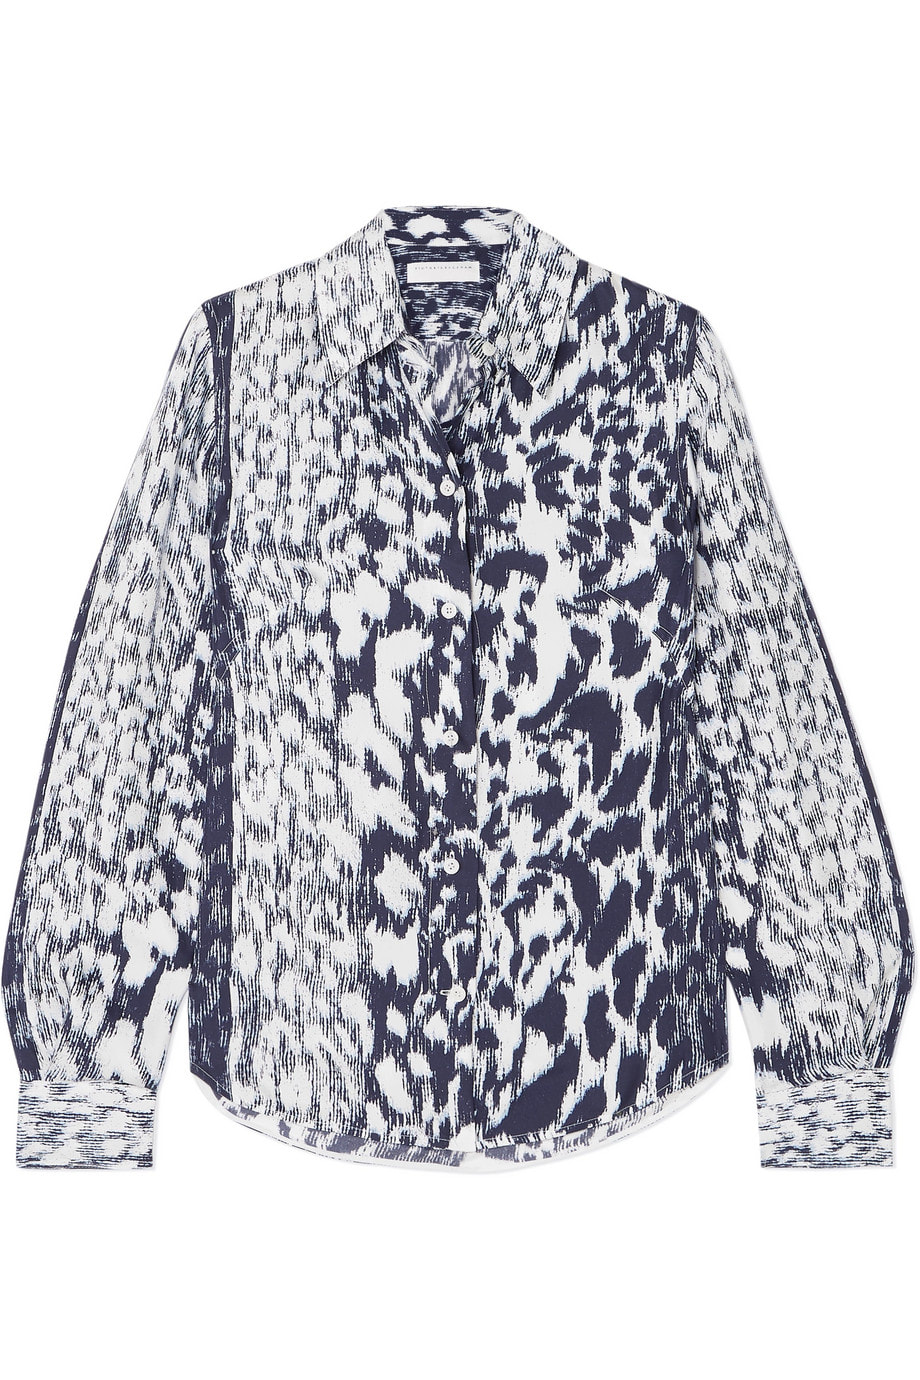 Victoria Beckham leopard print long sleeve twill shirt